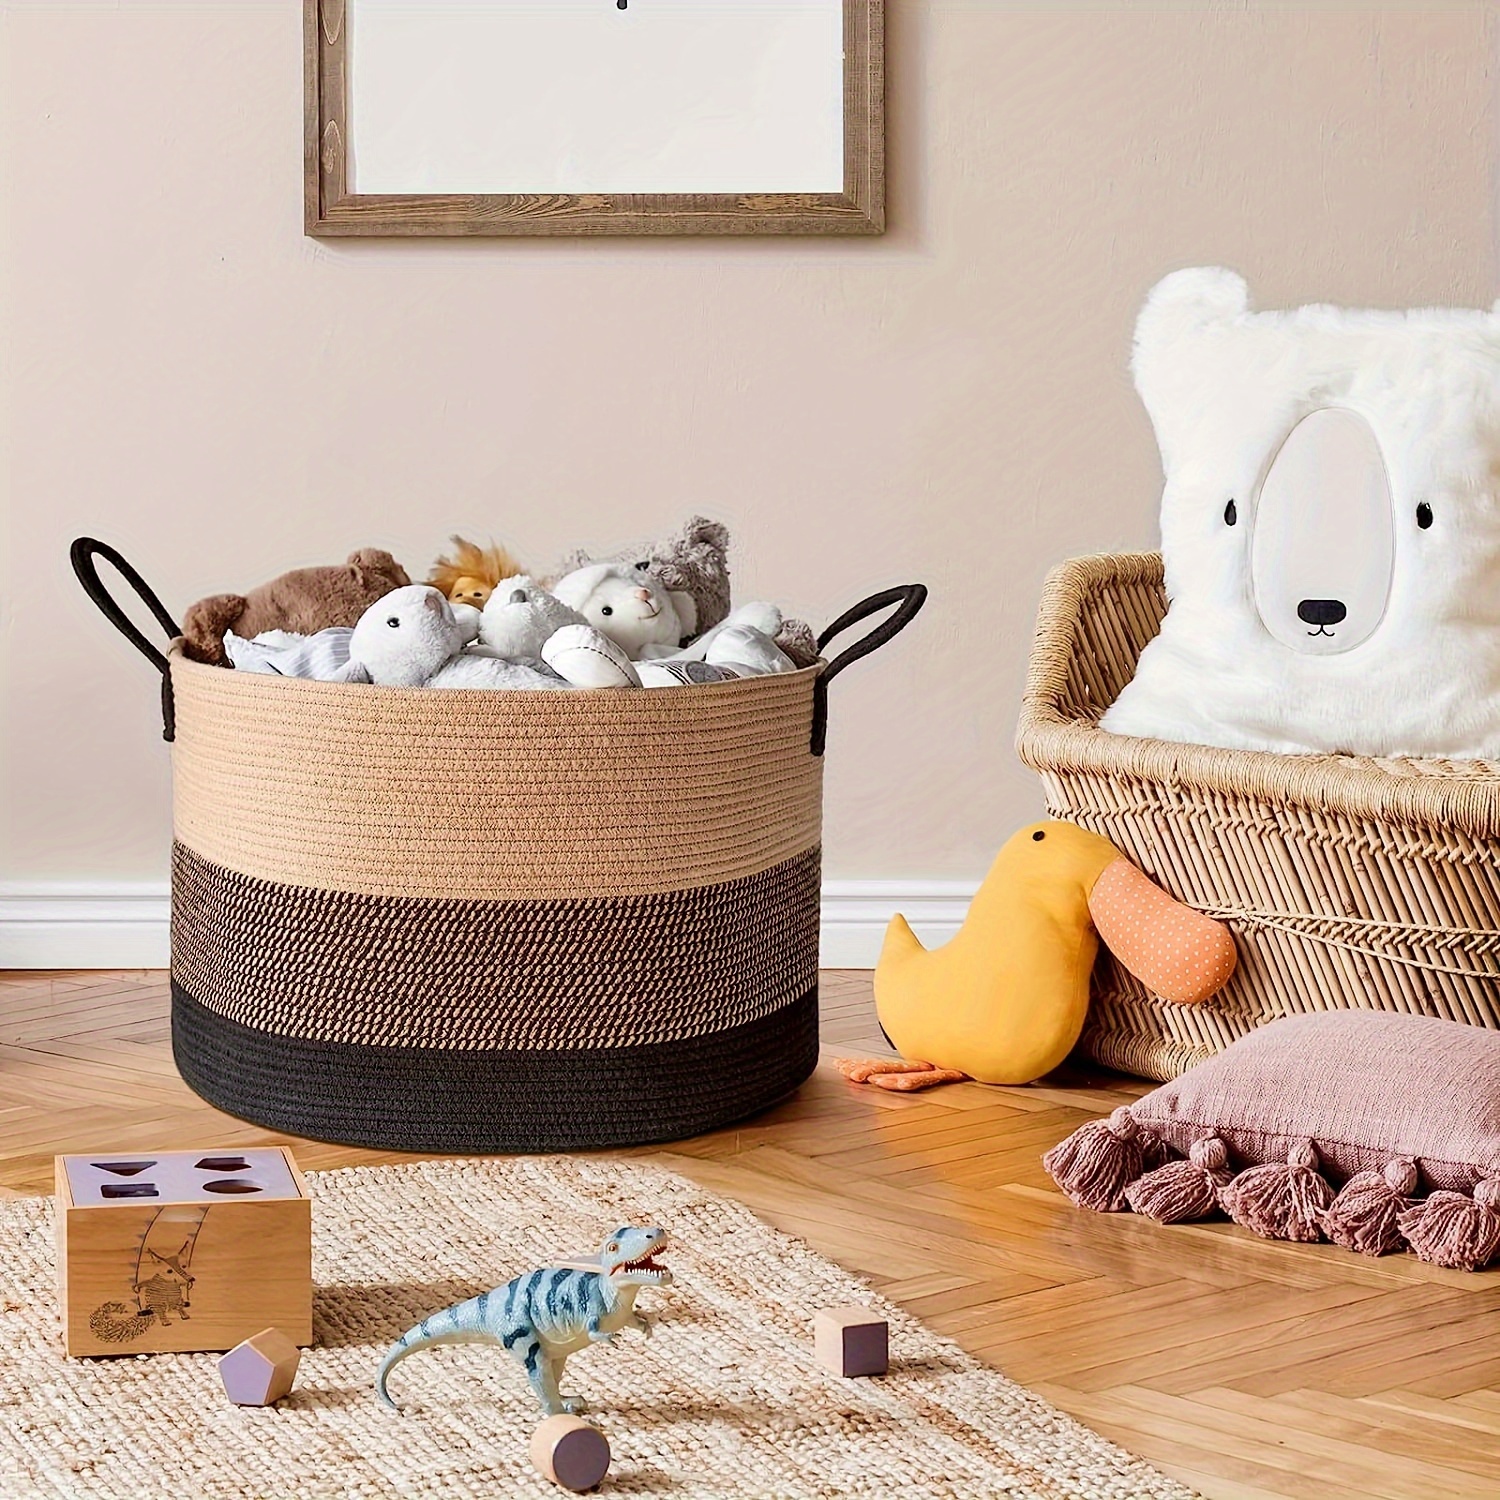 Cesta de manta lavable XXXXL para sala de estar, 2 unidades, cestas de  juguetes de cuerda tejida para niños, cesta extra grande para mantas